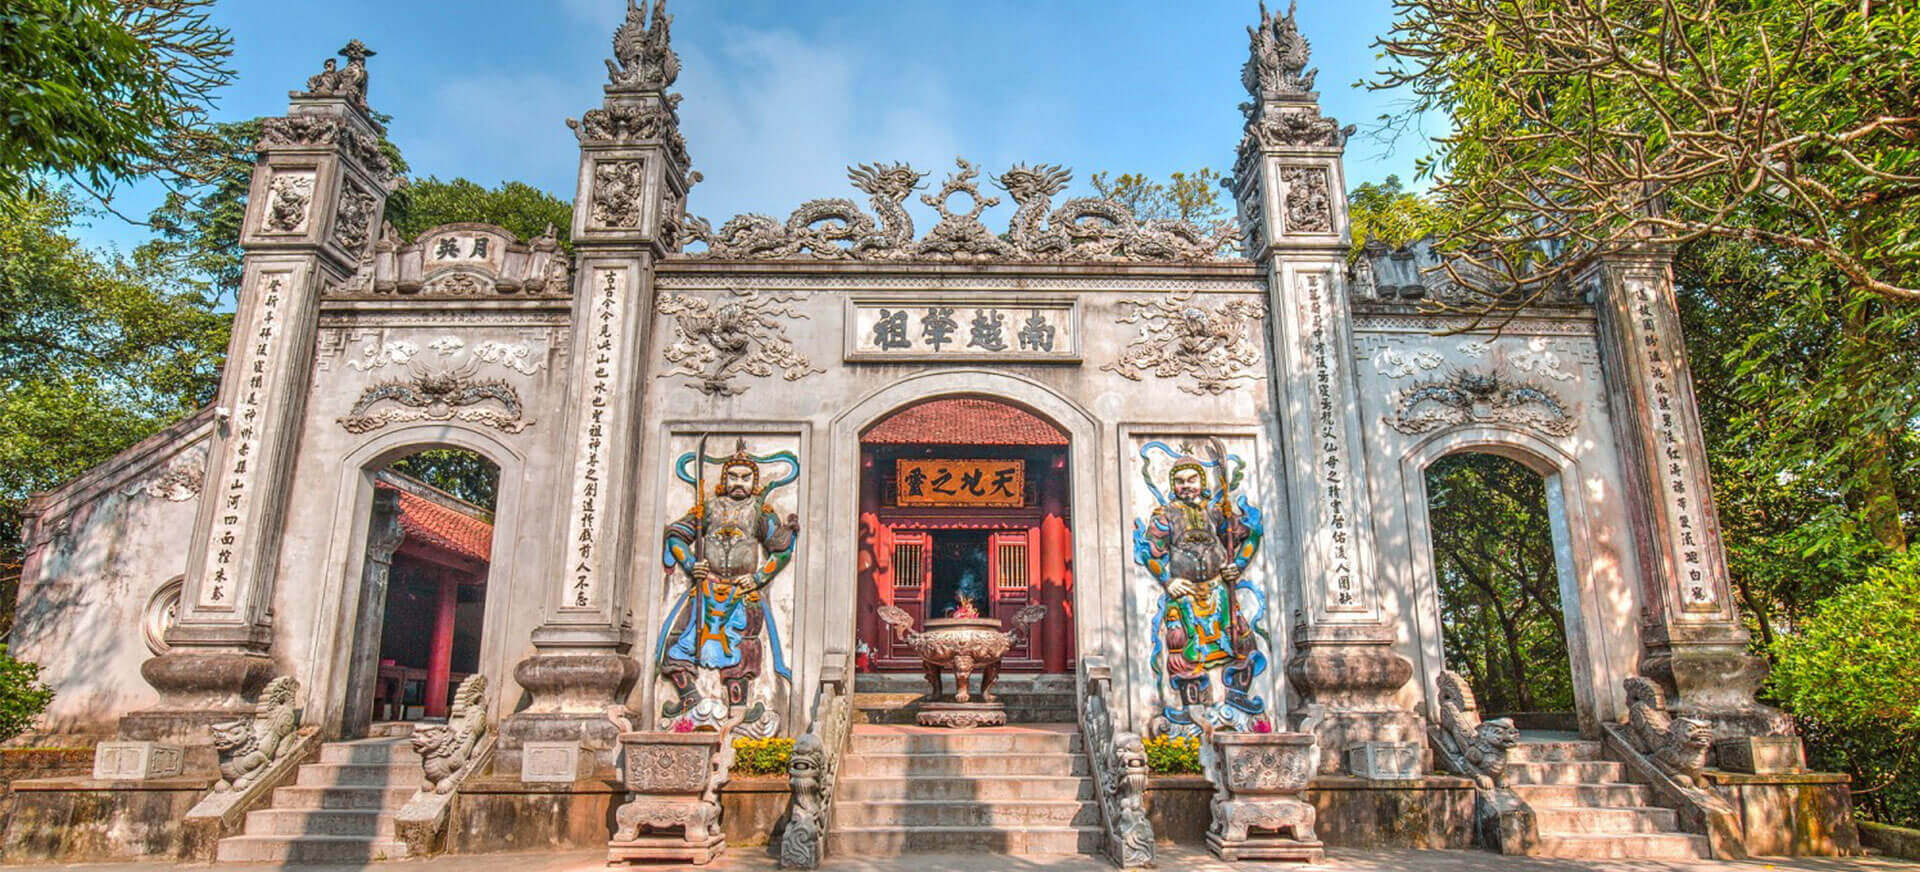 Đền Hùng - Địa điểm thiêng liêng, có giá trị văn hóa tại tỉnh Phú Thọ